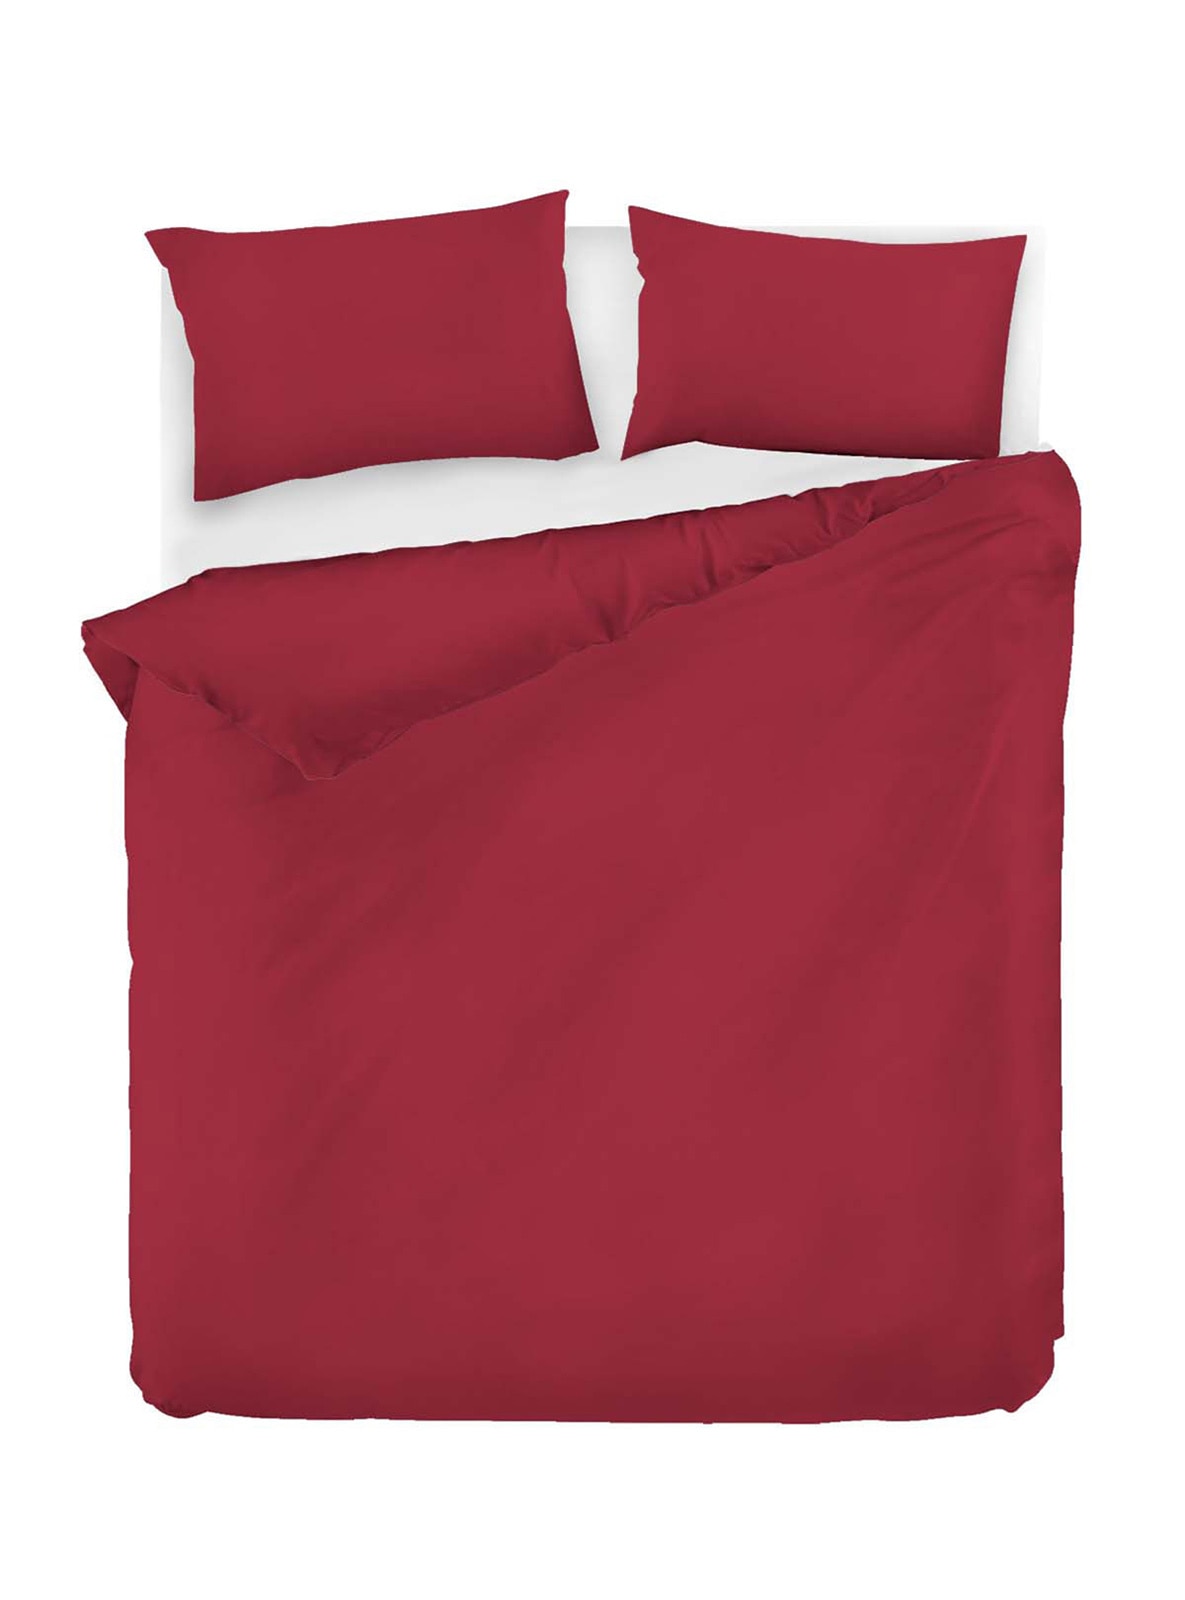 Maroon - Duvet Set: 2 Pillowcases & 1 Duvet Cover